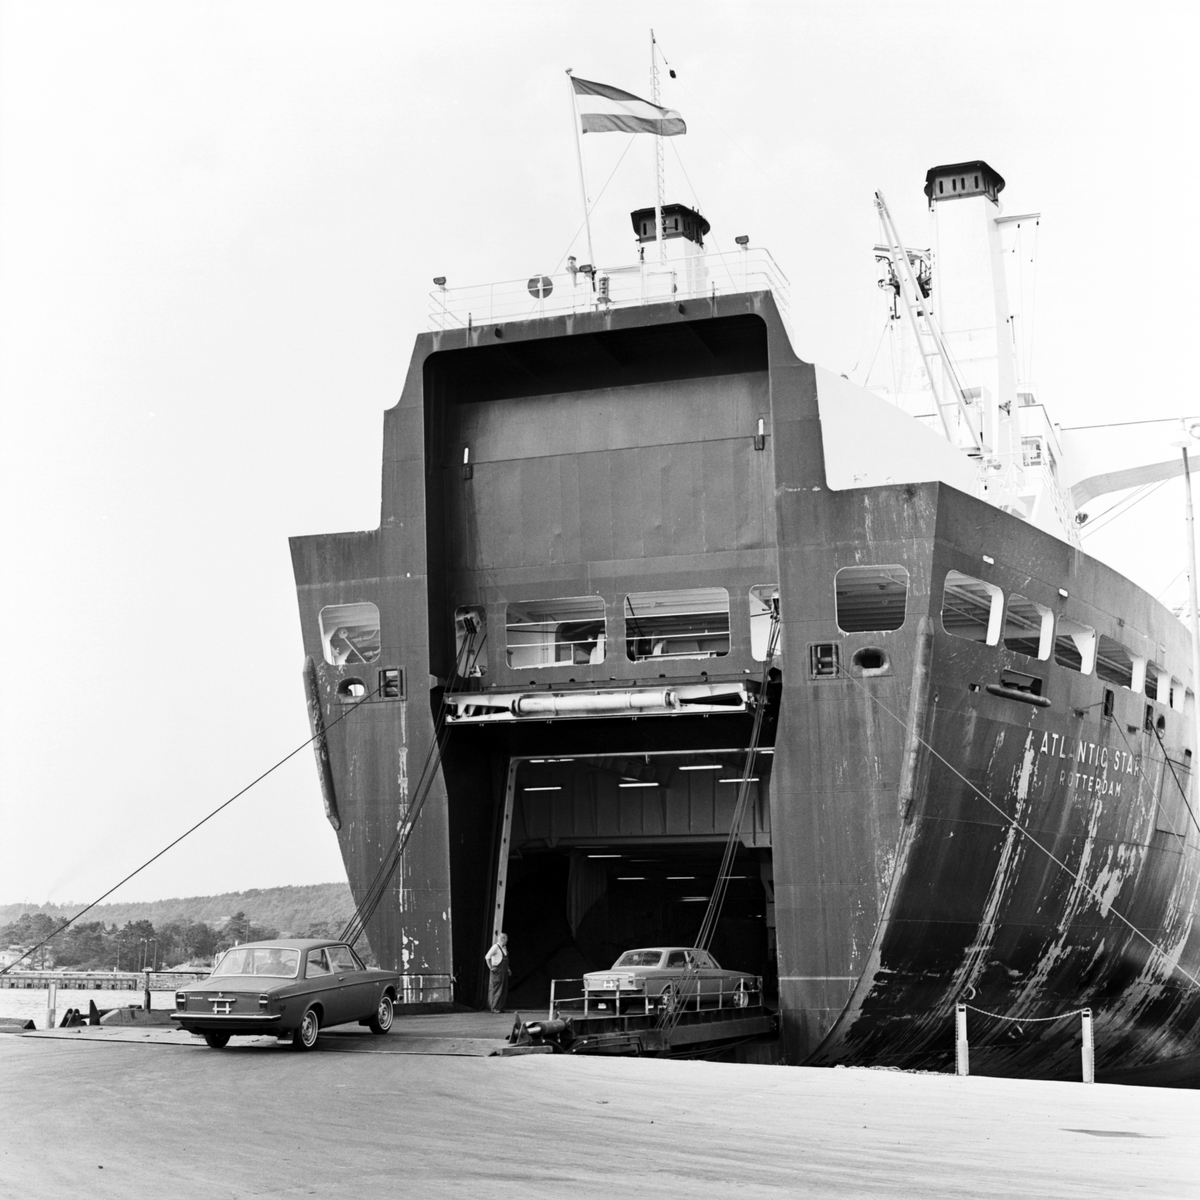 Göteborg Norra, containerterminal. M/S Atlantic Star, byggd 1967 av Ateliers & Chantiers de Dunkerque & Bordeaux, Gironde, Frankrike och levererades till Holland America Lijn, Rotterdam, Holland. Trafikerade Nordatlanten